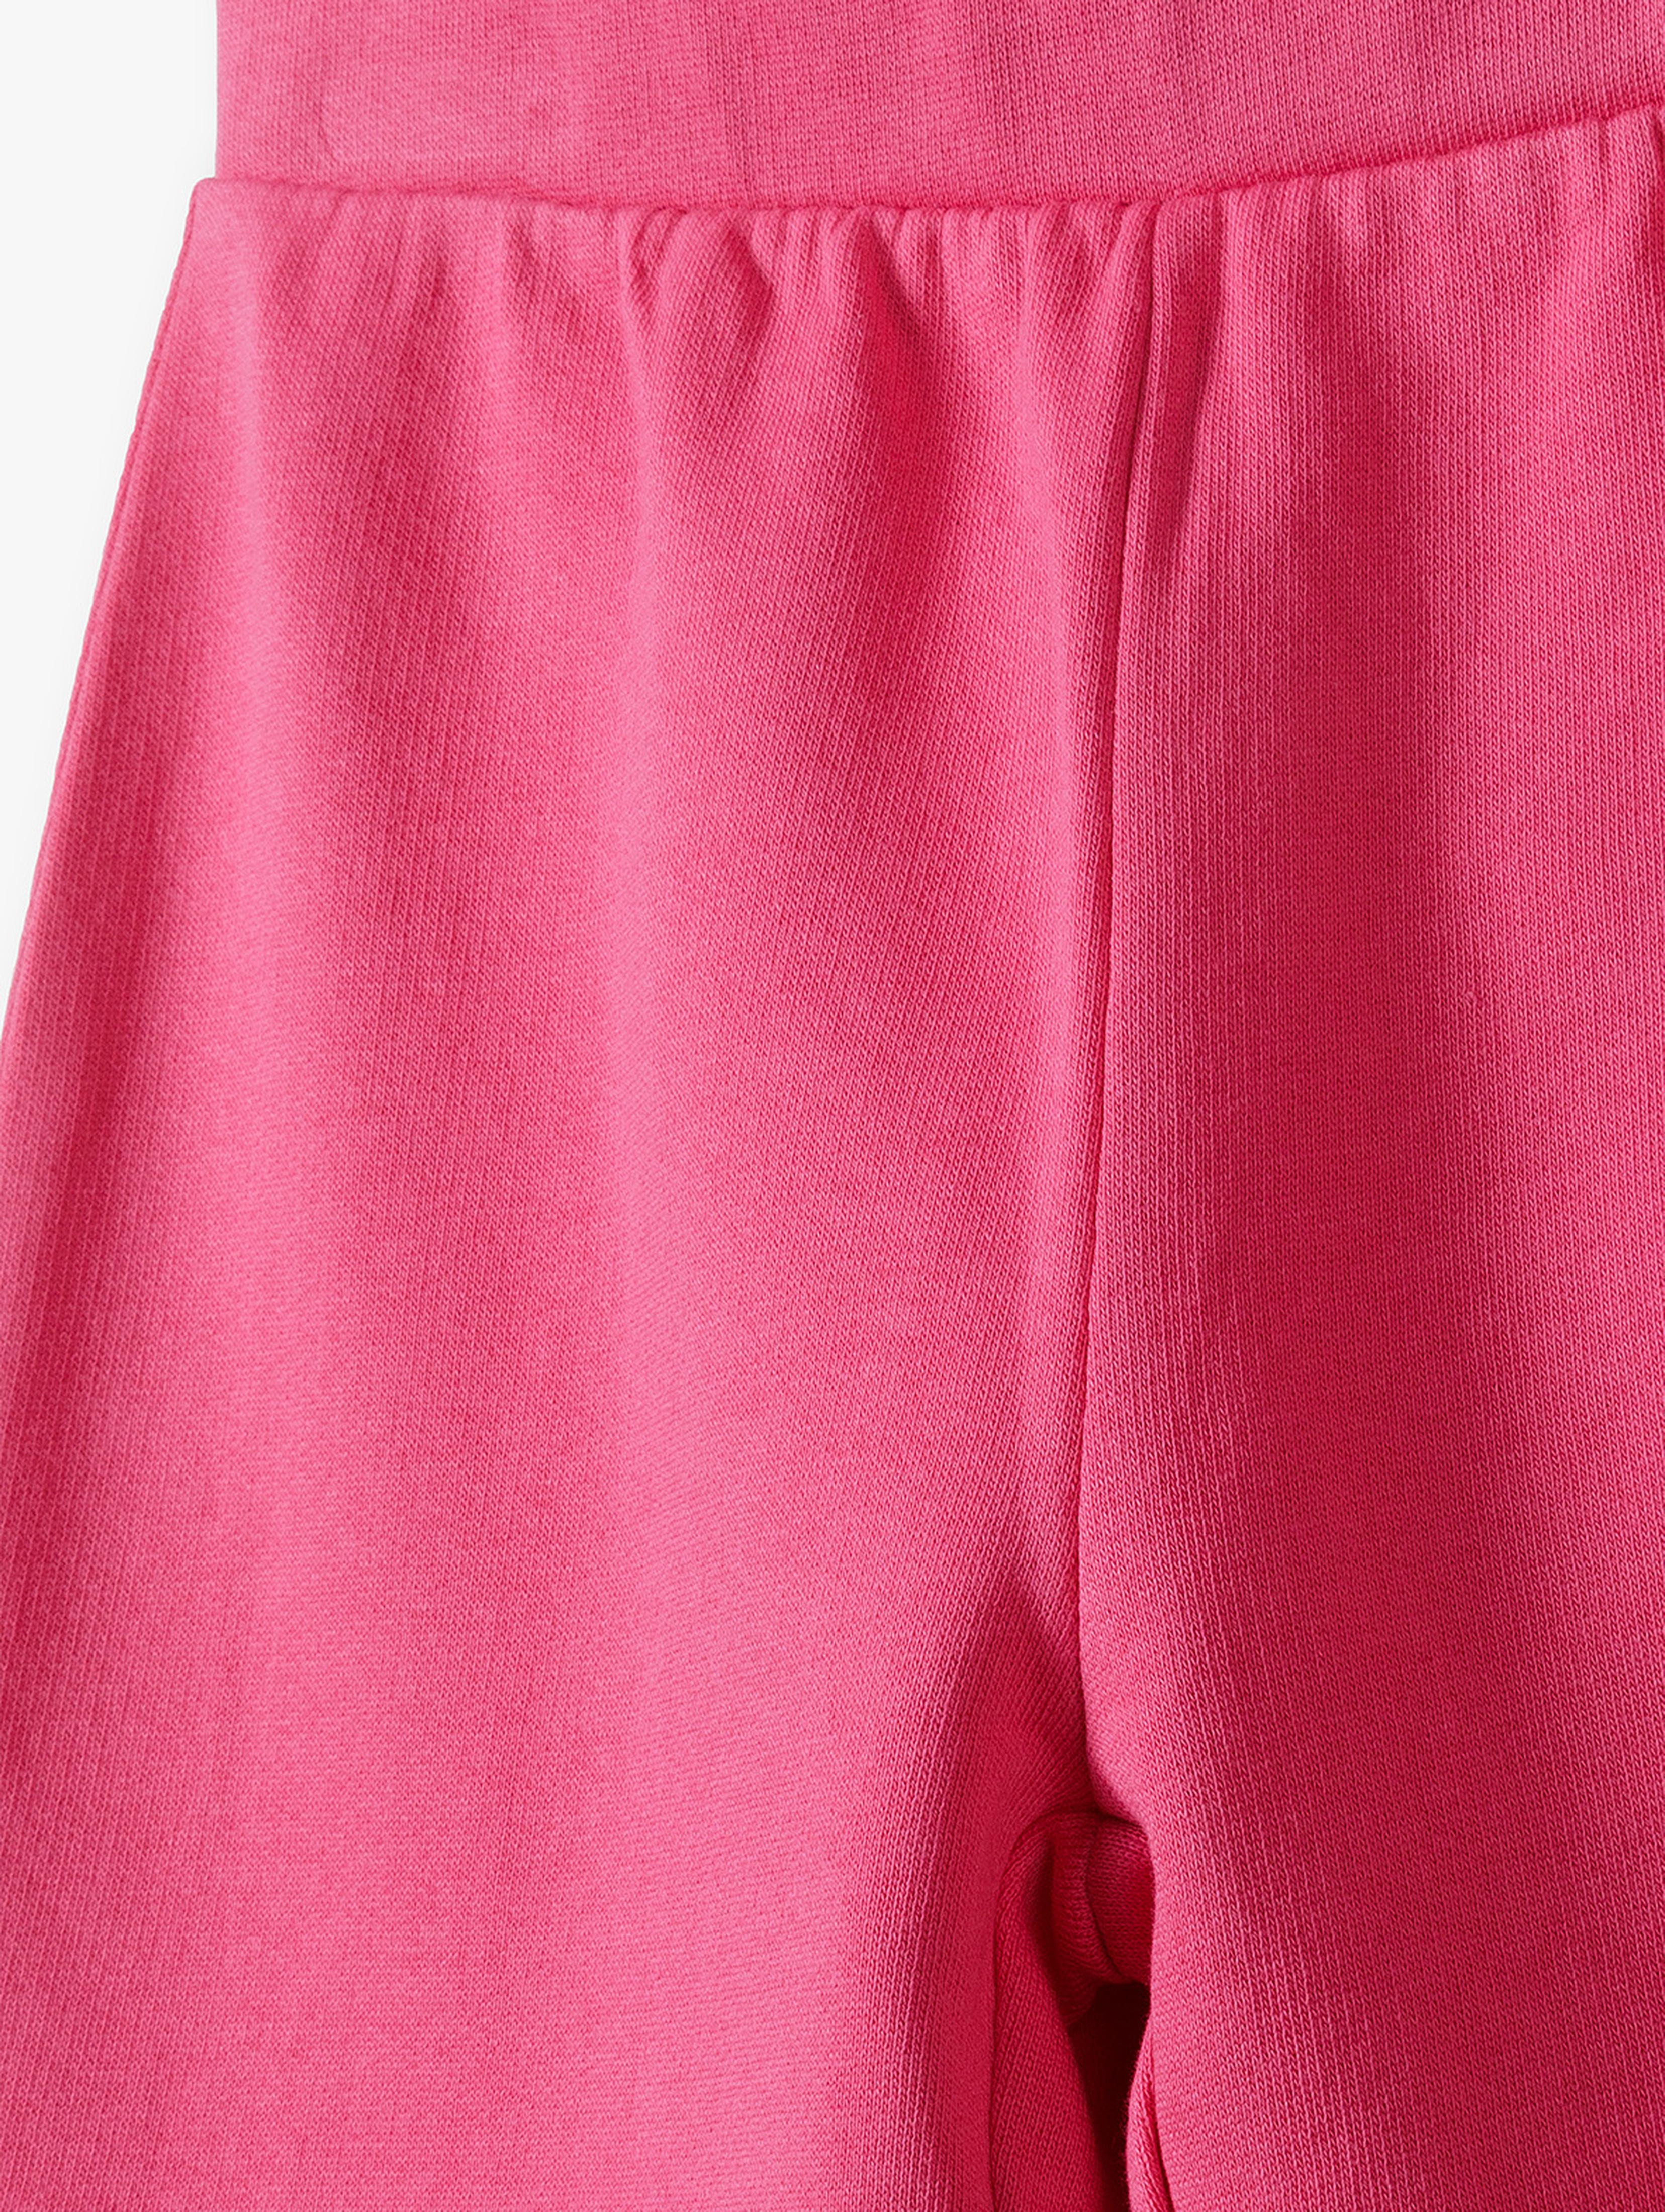 Spodnie dziewczęce flare - różowe w prążki - Limited Edition